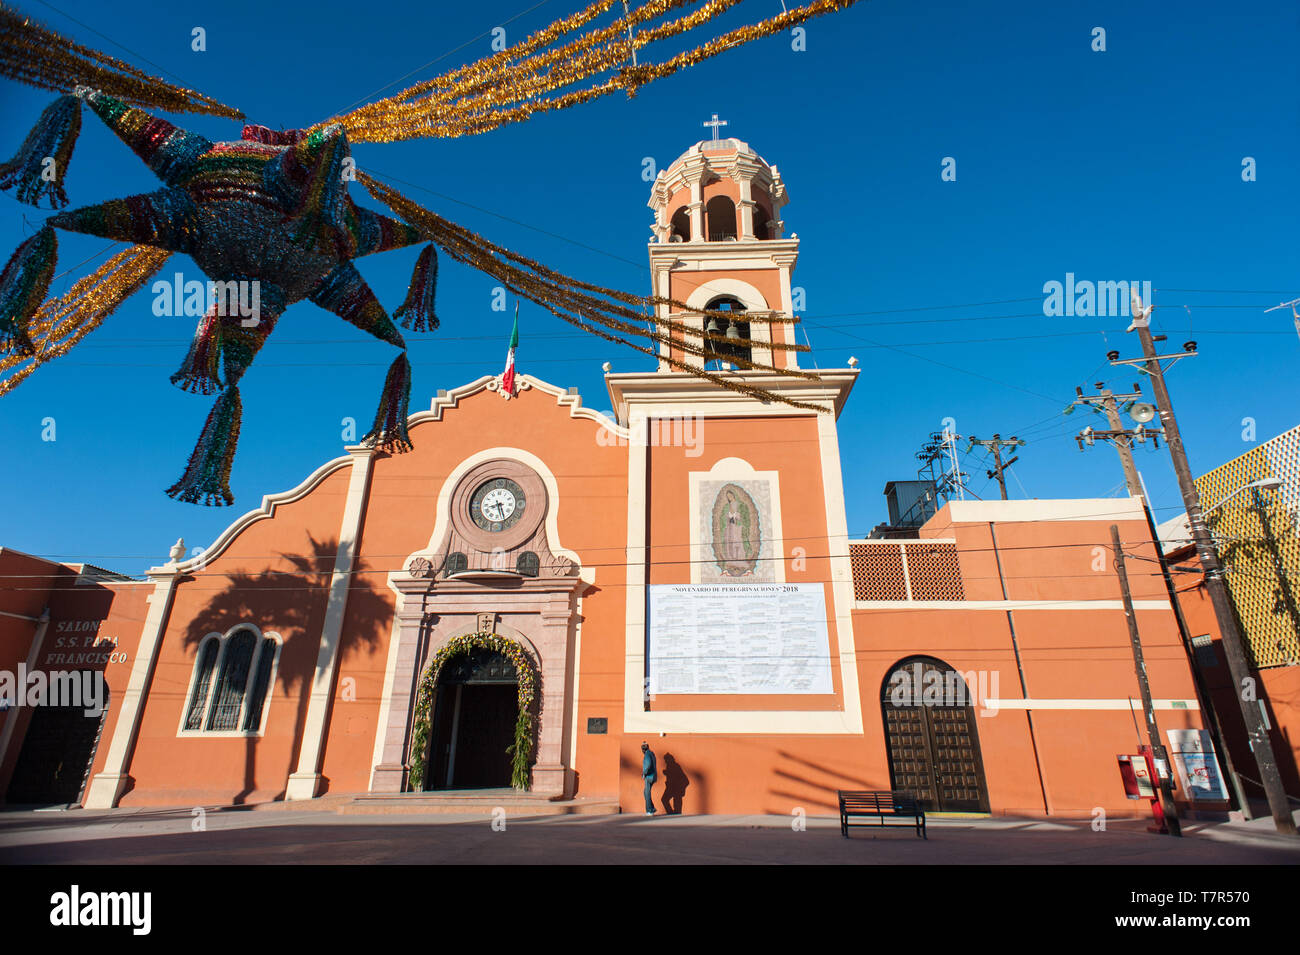 Mexicali, Mexico: Nuestra Senora de Guadalupe church. Stock Photo